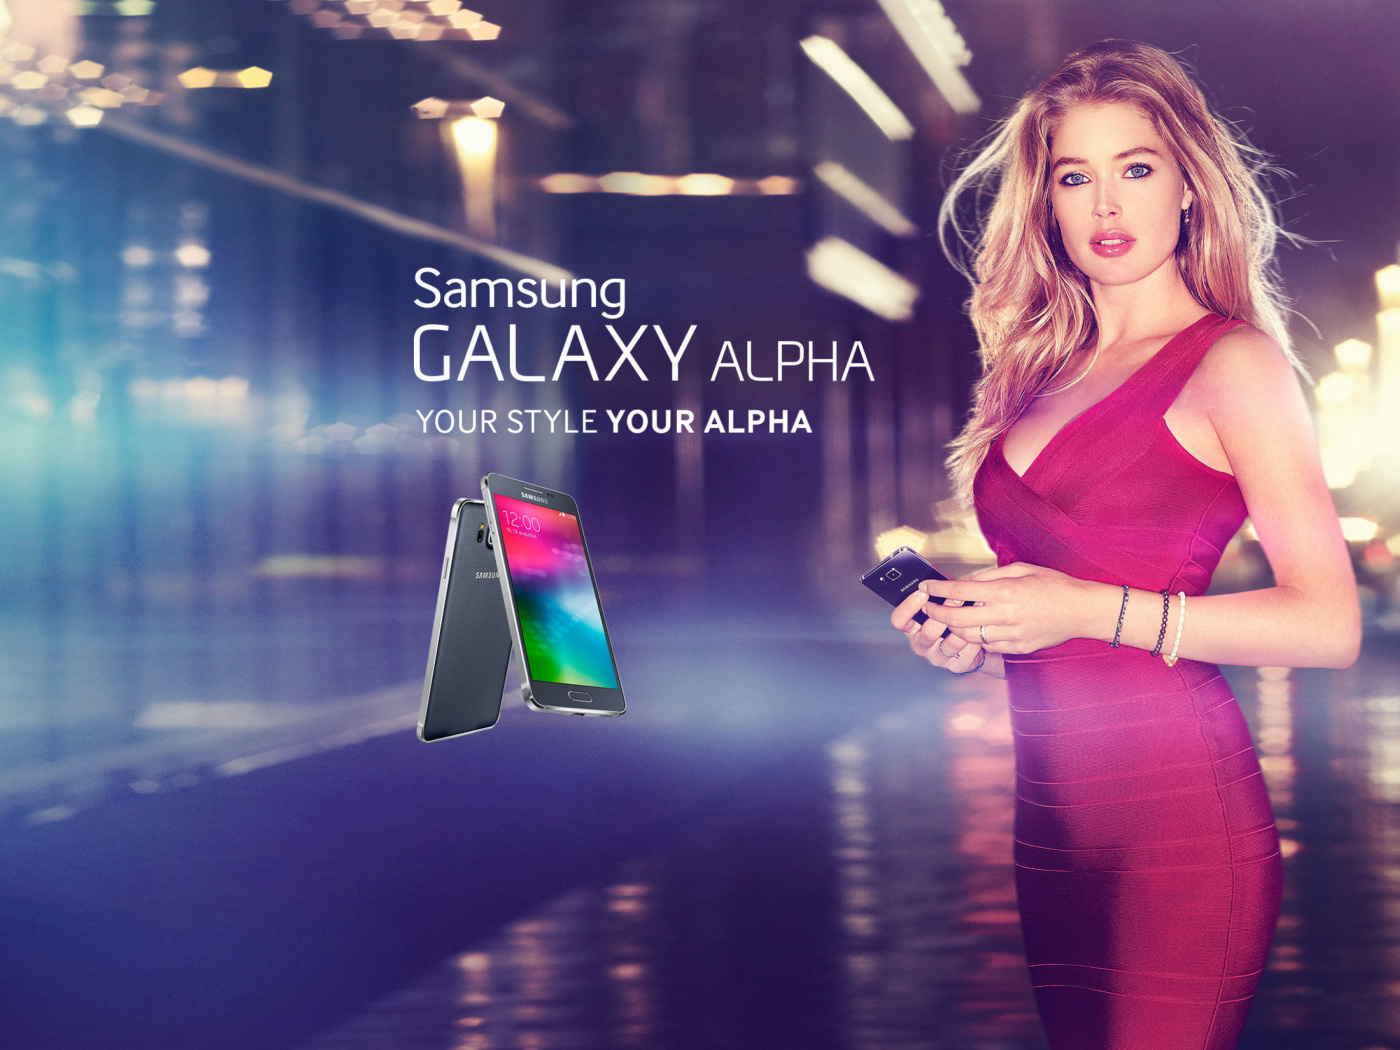 Samsung Galaxy Alpha Advertisement with Doutzen Kroes screenshot #1 1400x1050